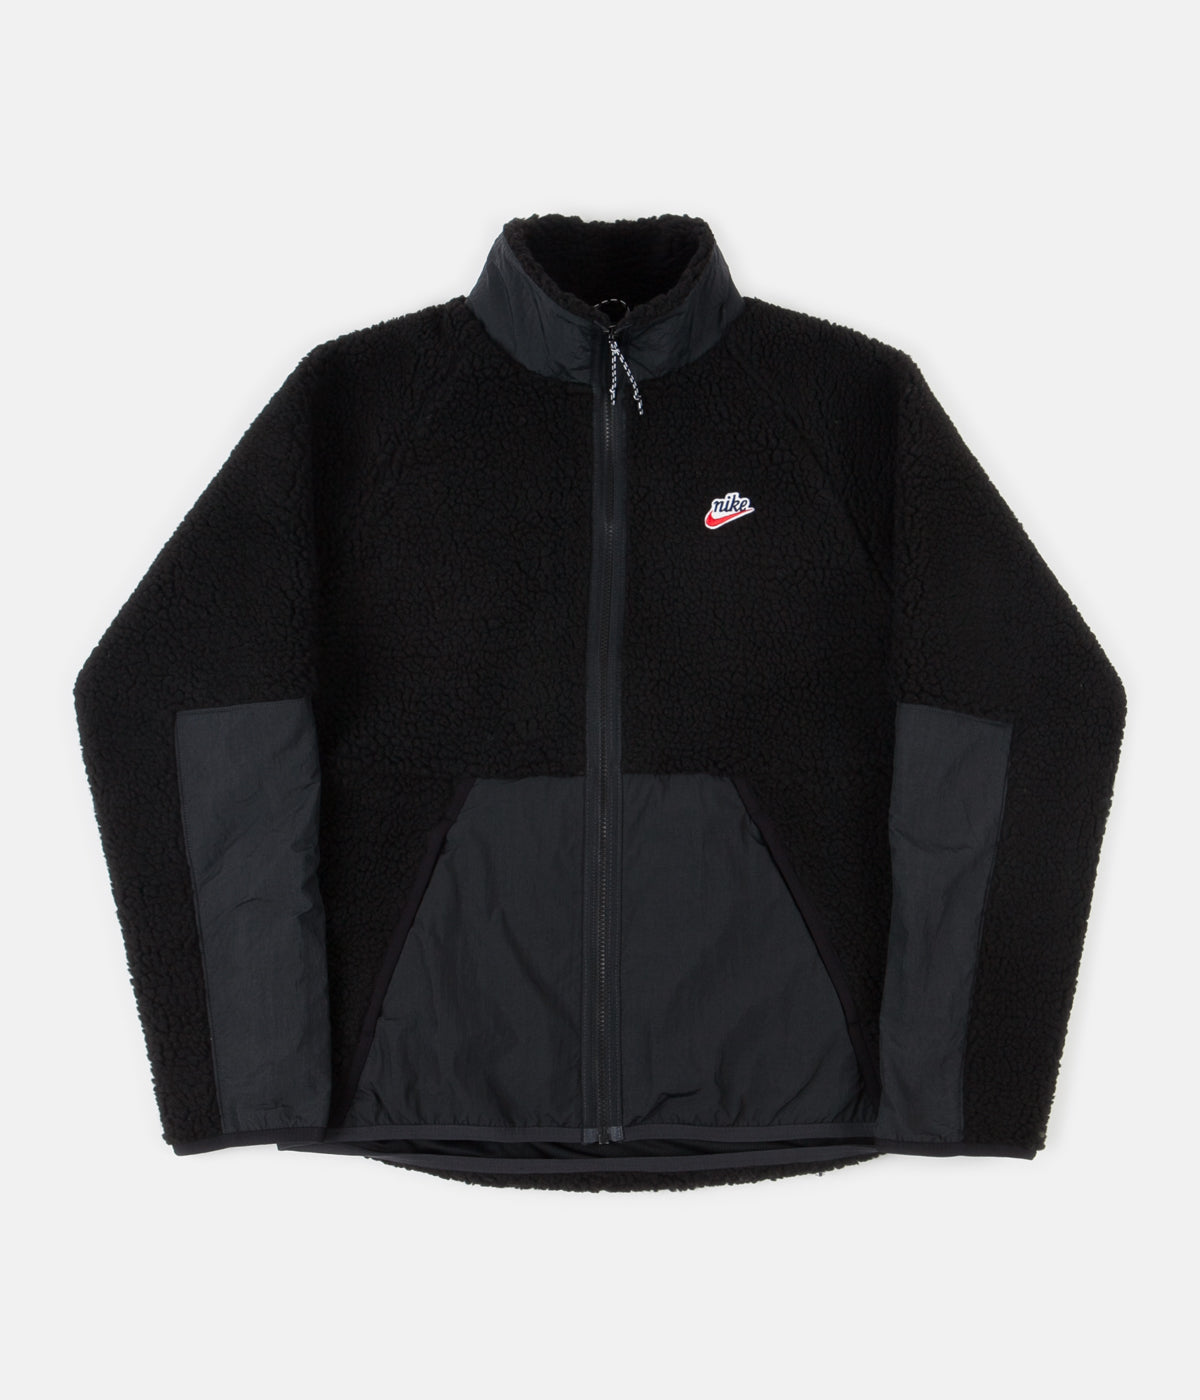 Nike Winter Fleece Jacket - Black / Off 